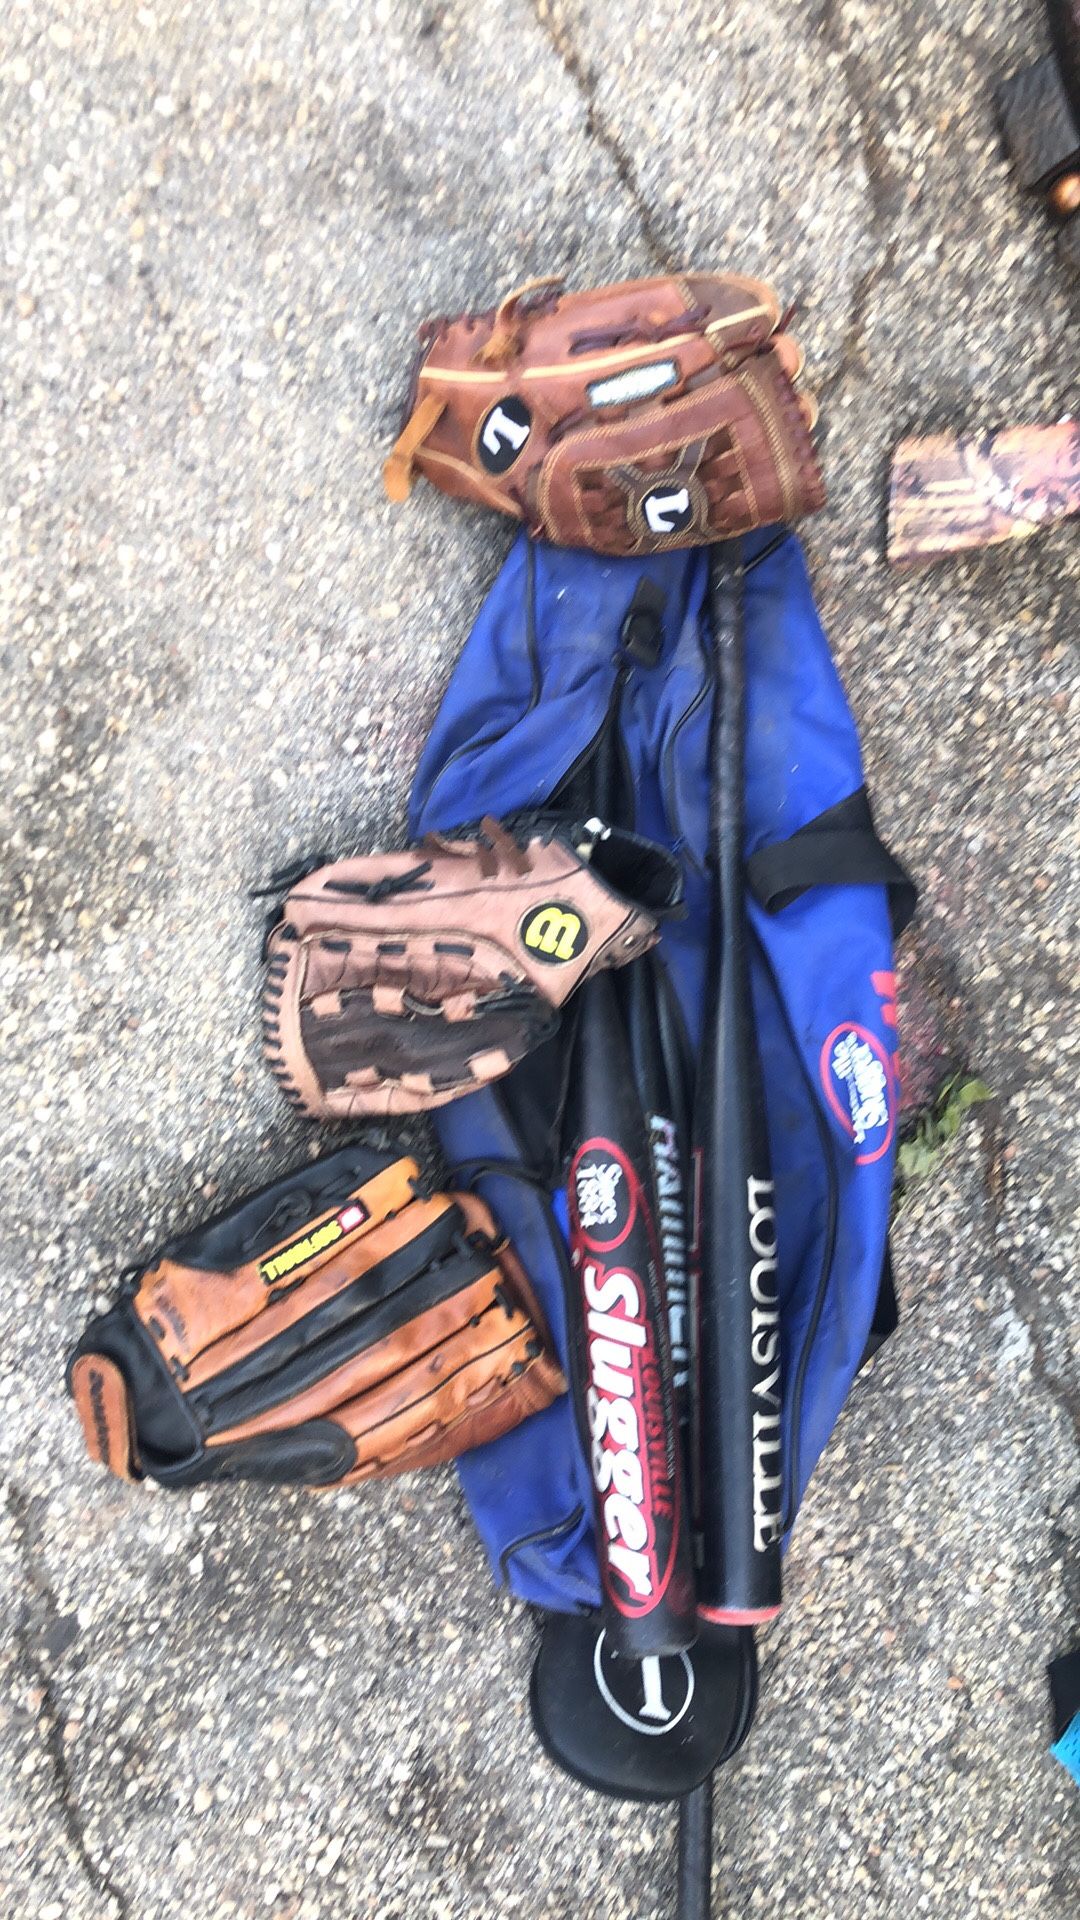 Baseball kit